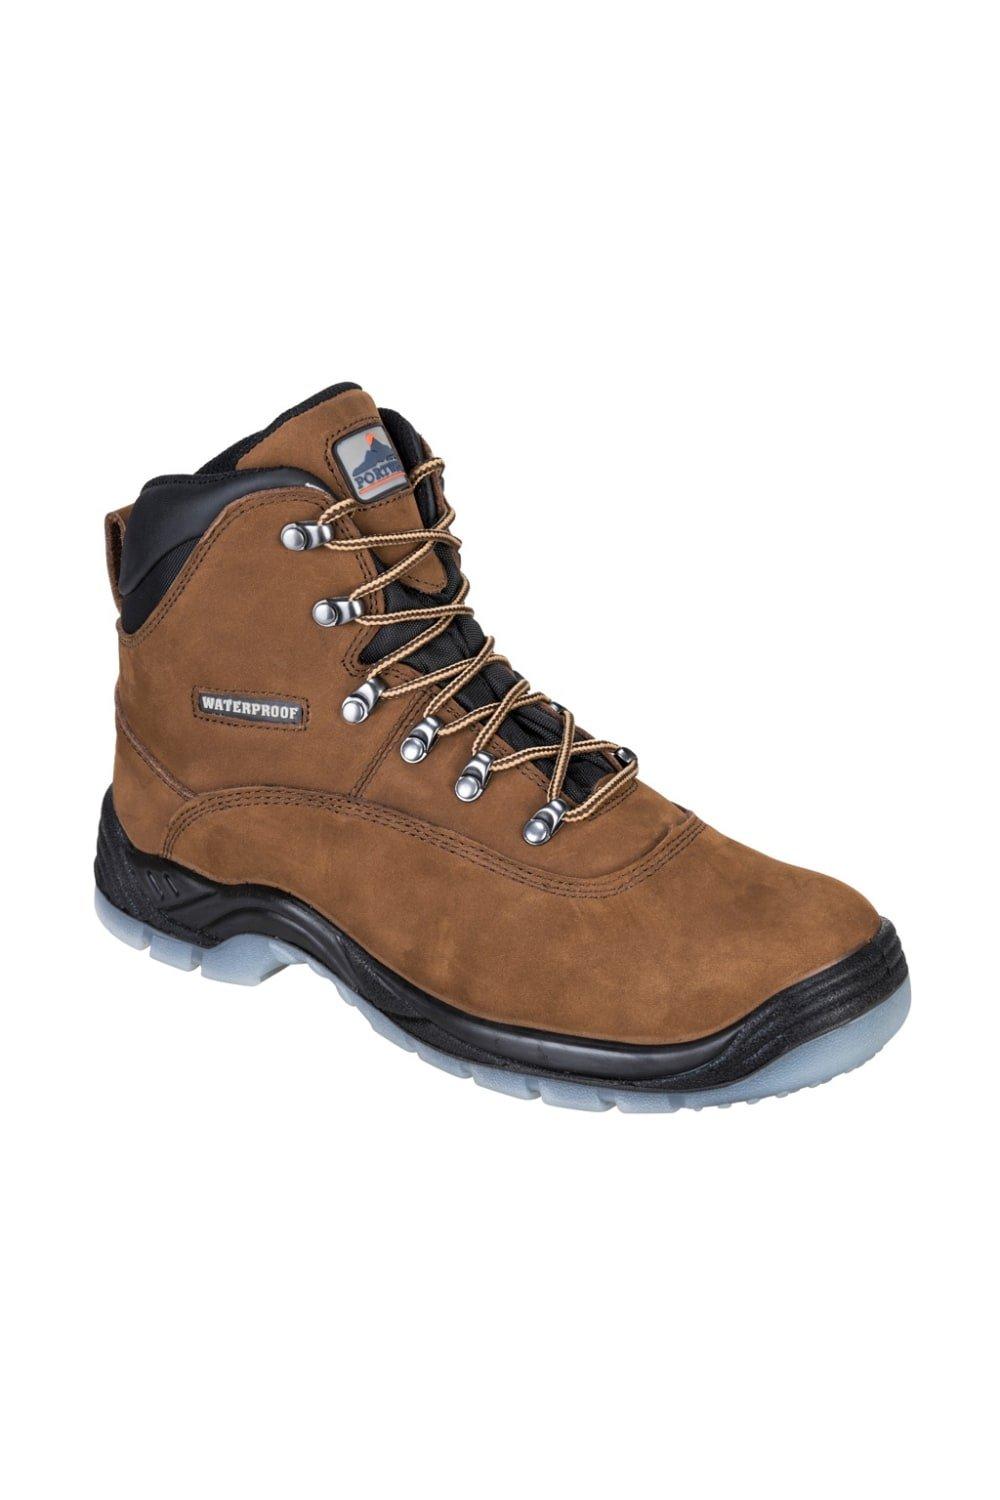 Кожаные защитные ботинки Steelite Portwest, коричневый цена и фото